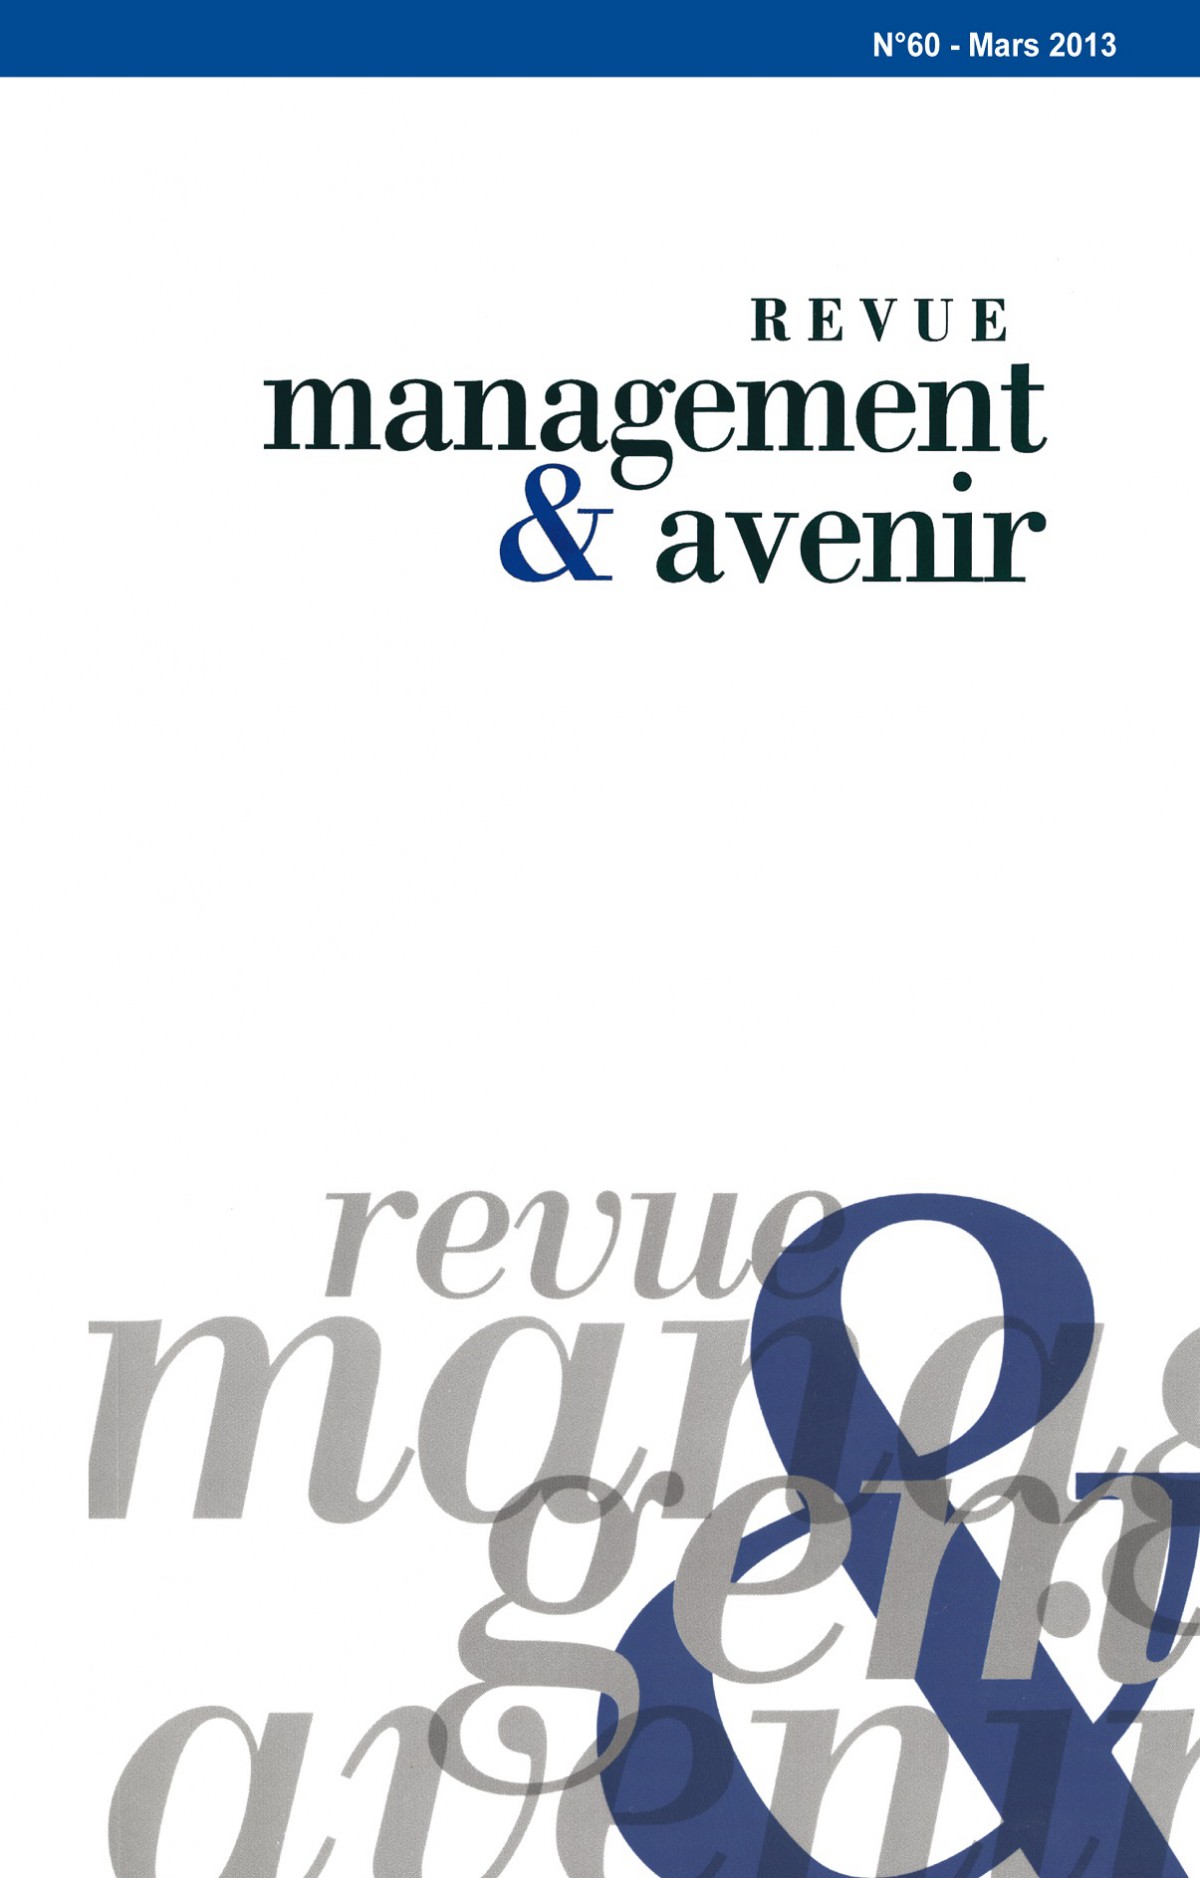 Management & Avenir, Revue généraliste, Publication des articles originaux de chercheurs en gestion, d’enseignants et de responsables d’entreprises et d’organisations